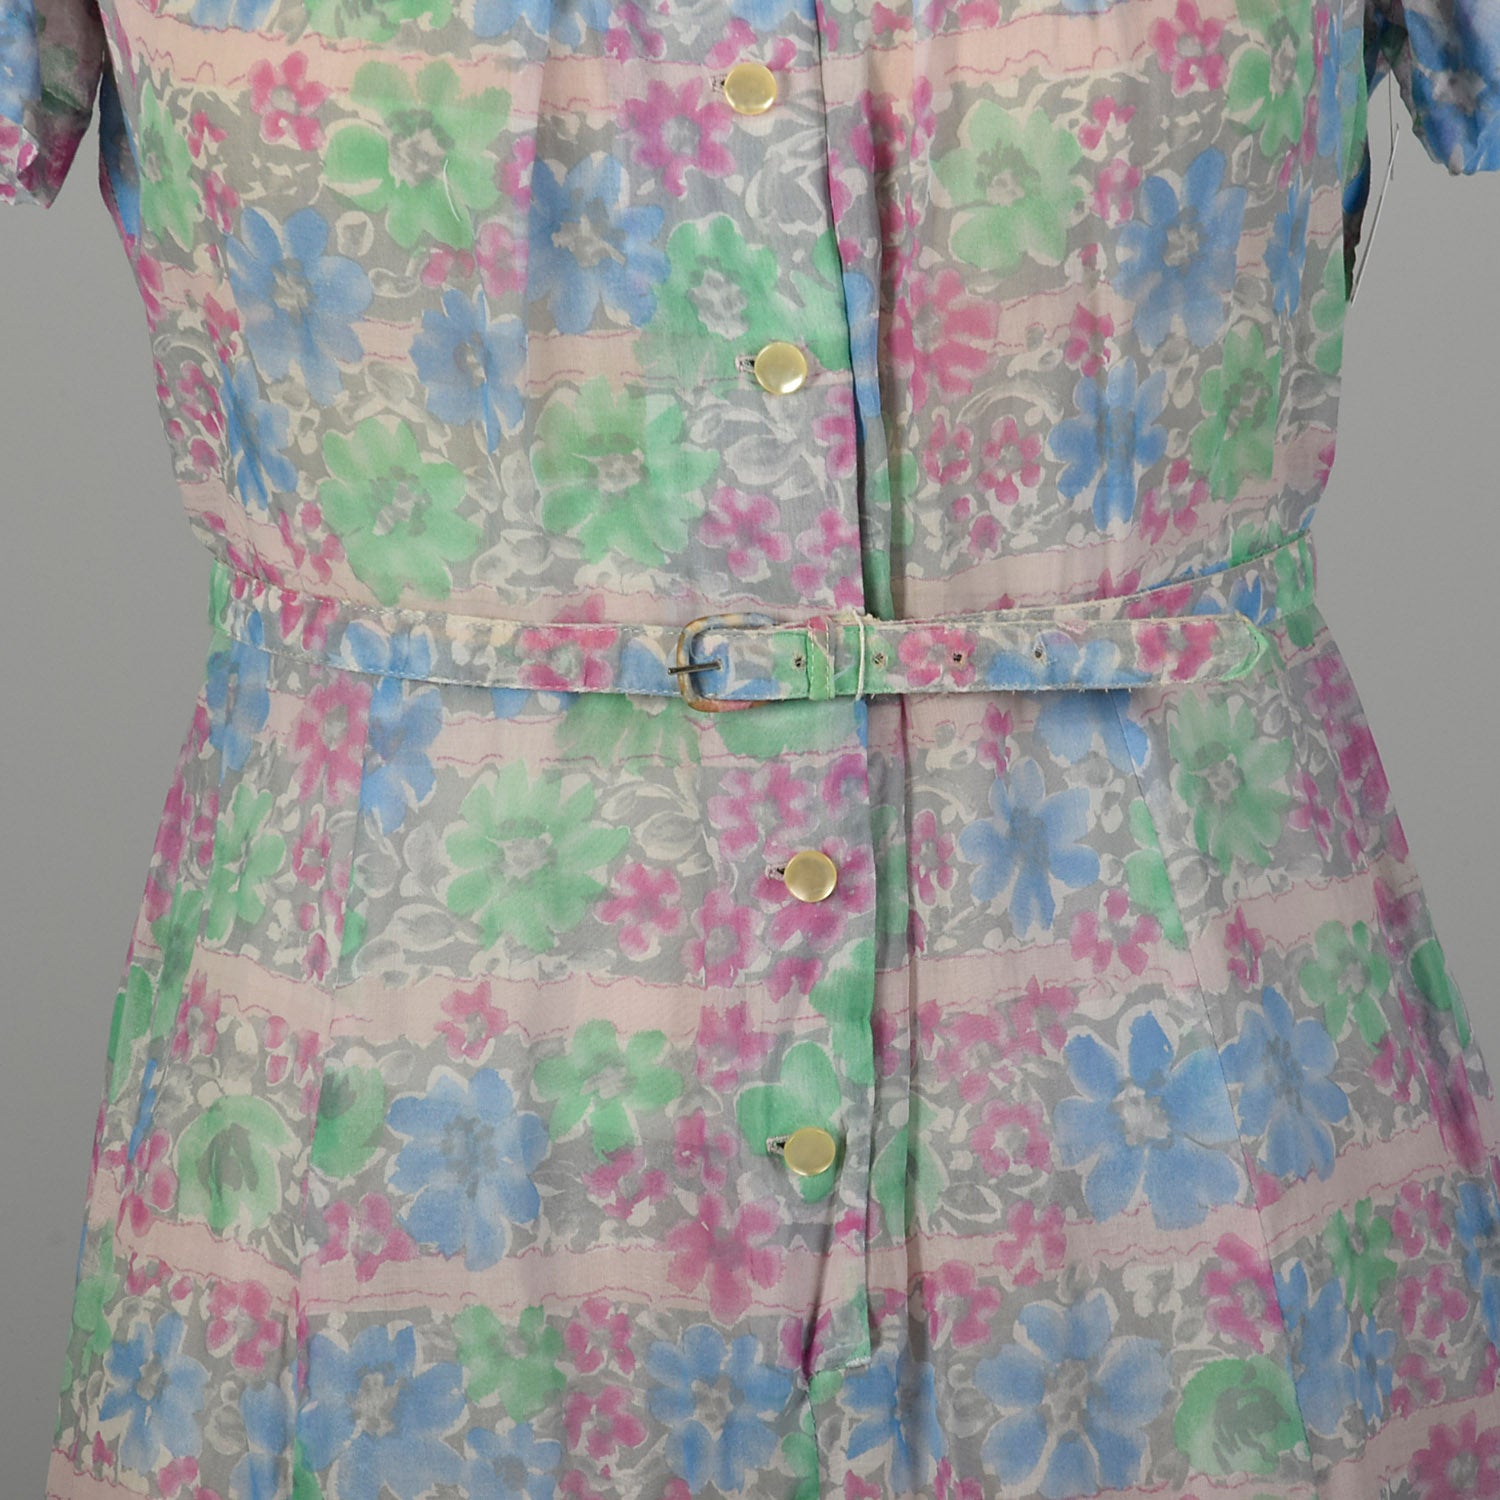 XXL 1950s Day Dress Lightweight Semi-Sheer Short Sleeve Floral Summer Casual